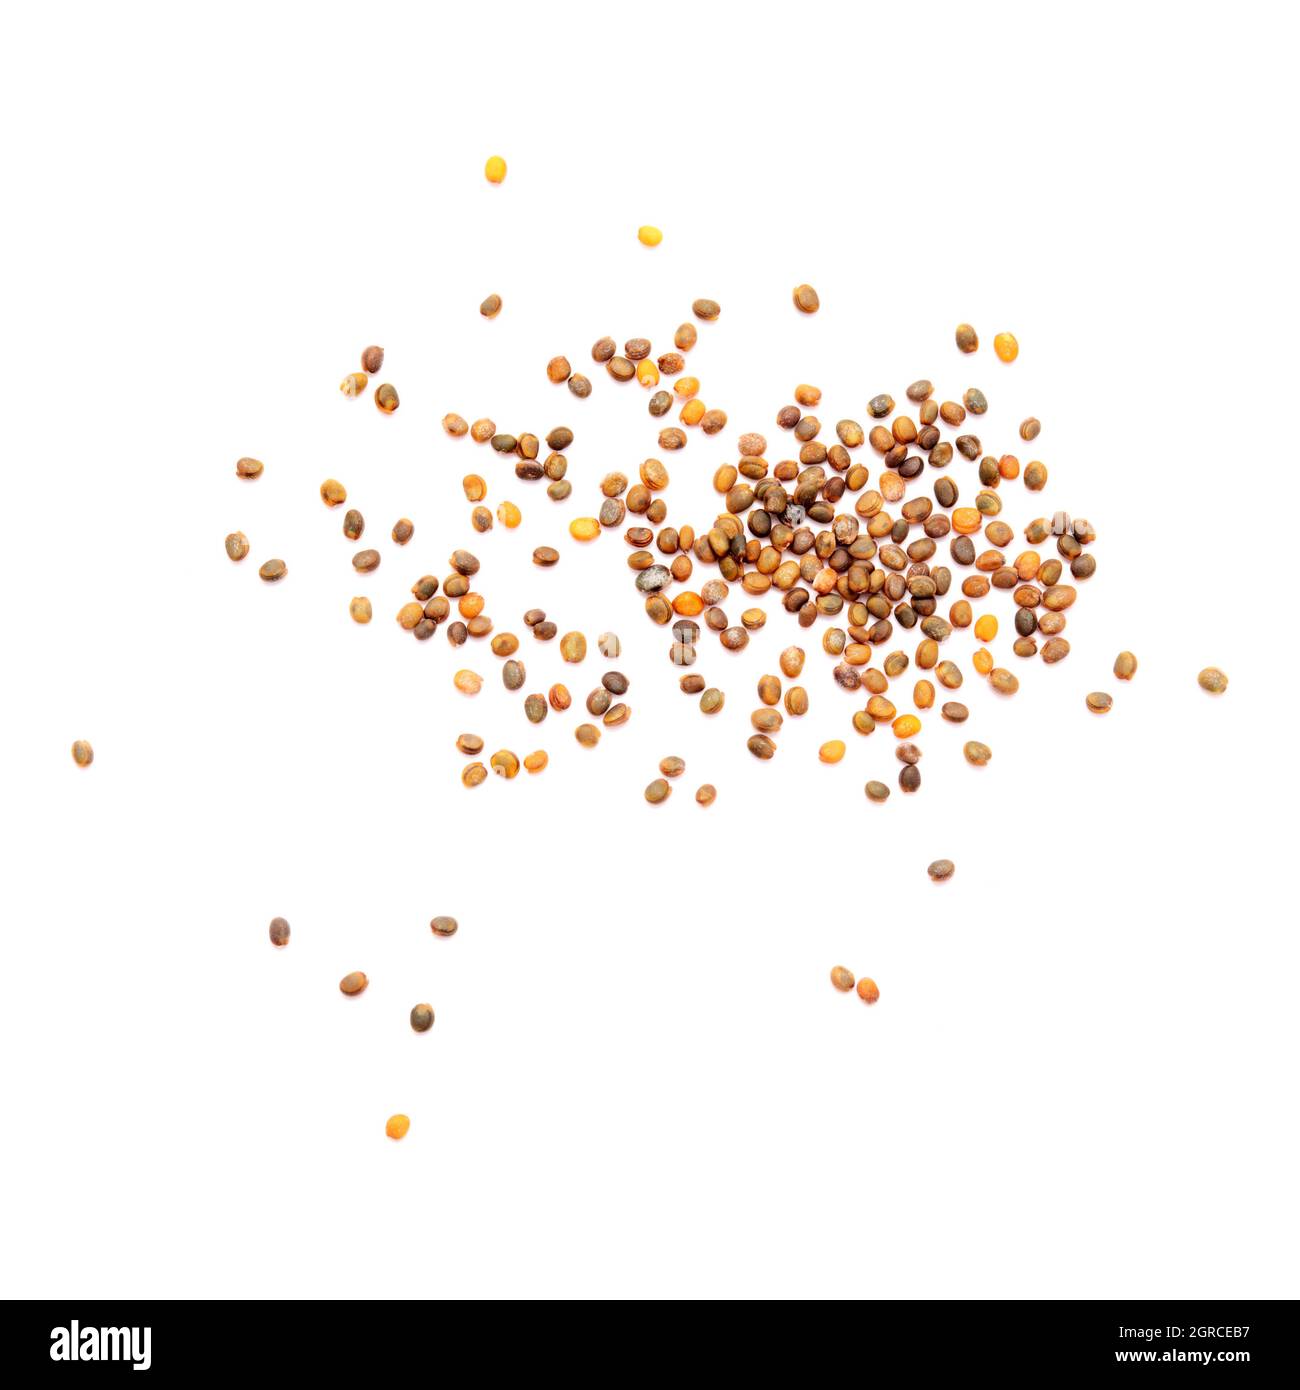 Kleine Samen von Rucola, lokale Produkte der Kanarischen Inseln, Spanien Stockfoto